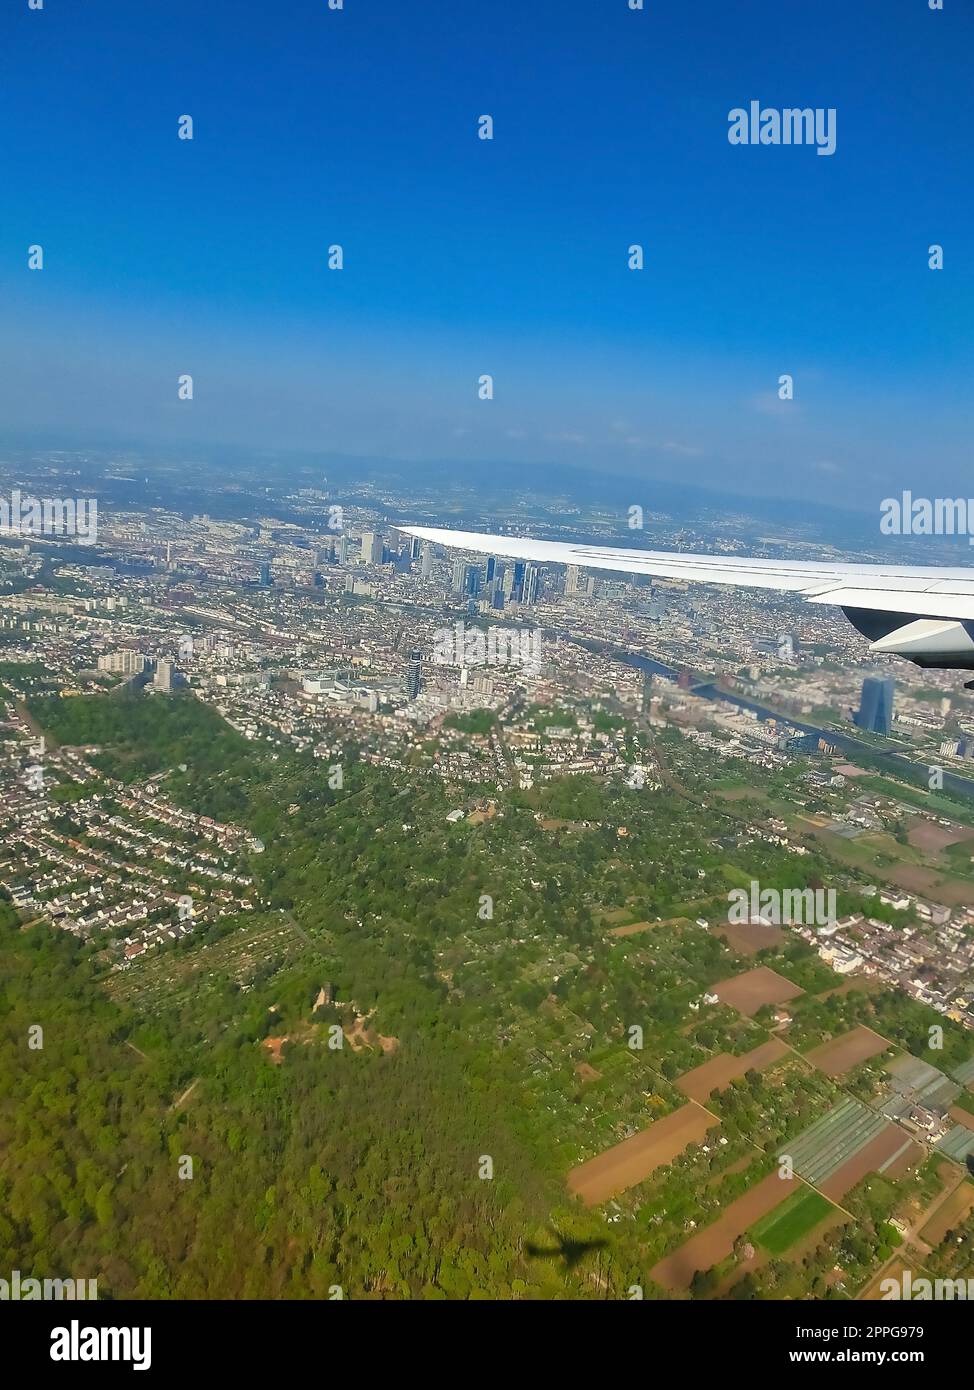 Vue de fenêtre d'avion de l'aile, des jonctions d'autoroute et de la forêt verte. Banque D'Images